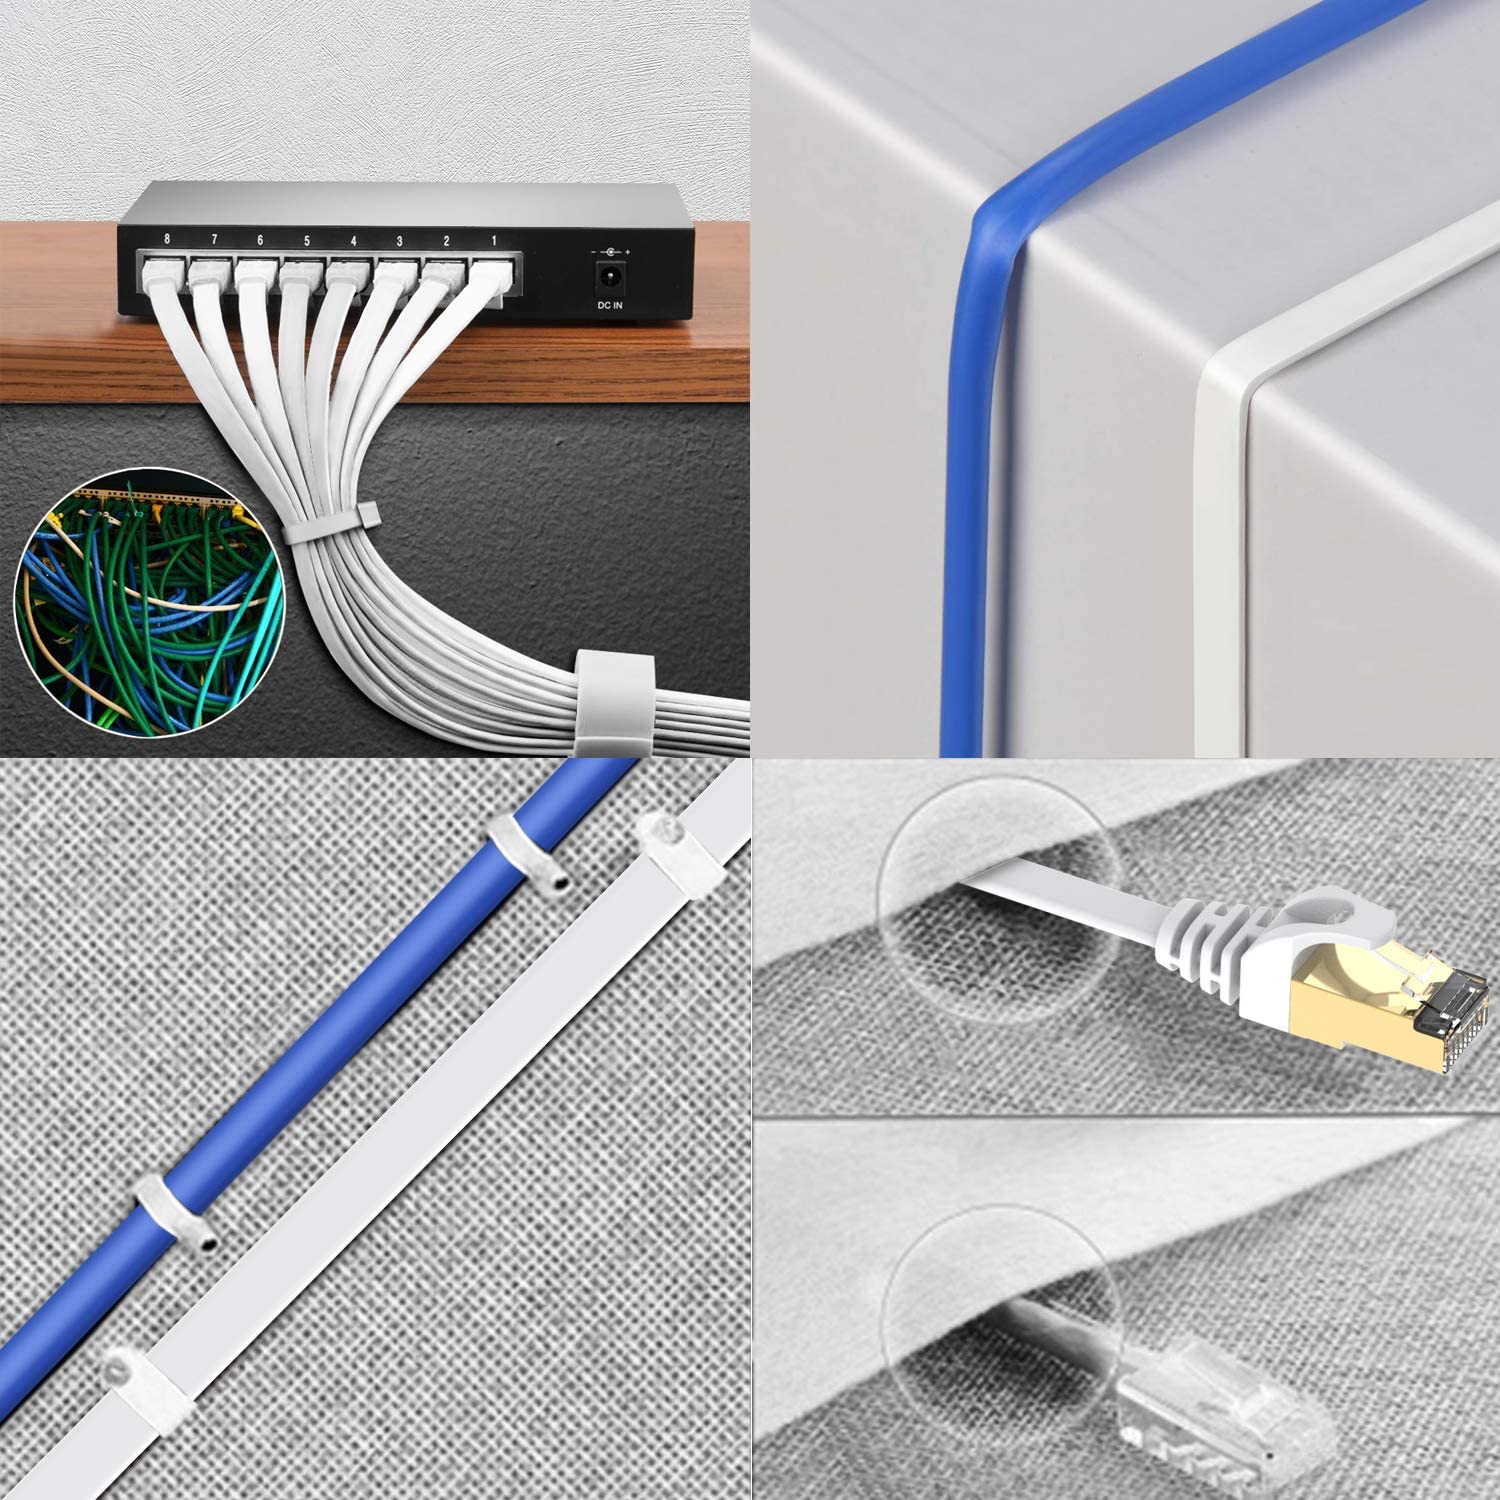 Elfcam® - 8m Cable Reseau Ethernet RJ45 Cat 7, Paire Torsadee Blindee SFTP  100% Cuivre, 6mm Diametre de Cable, 28 AWG Cable Rond & Noir (8M)